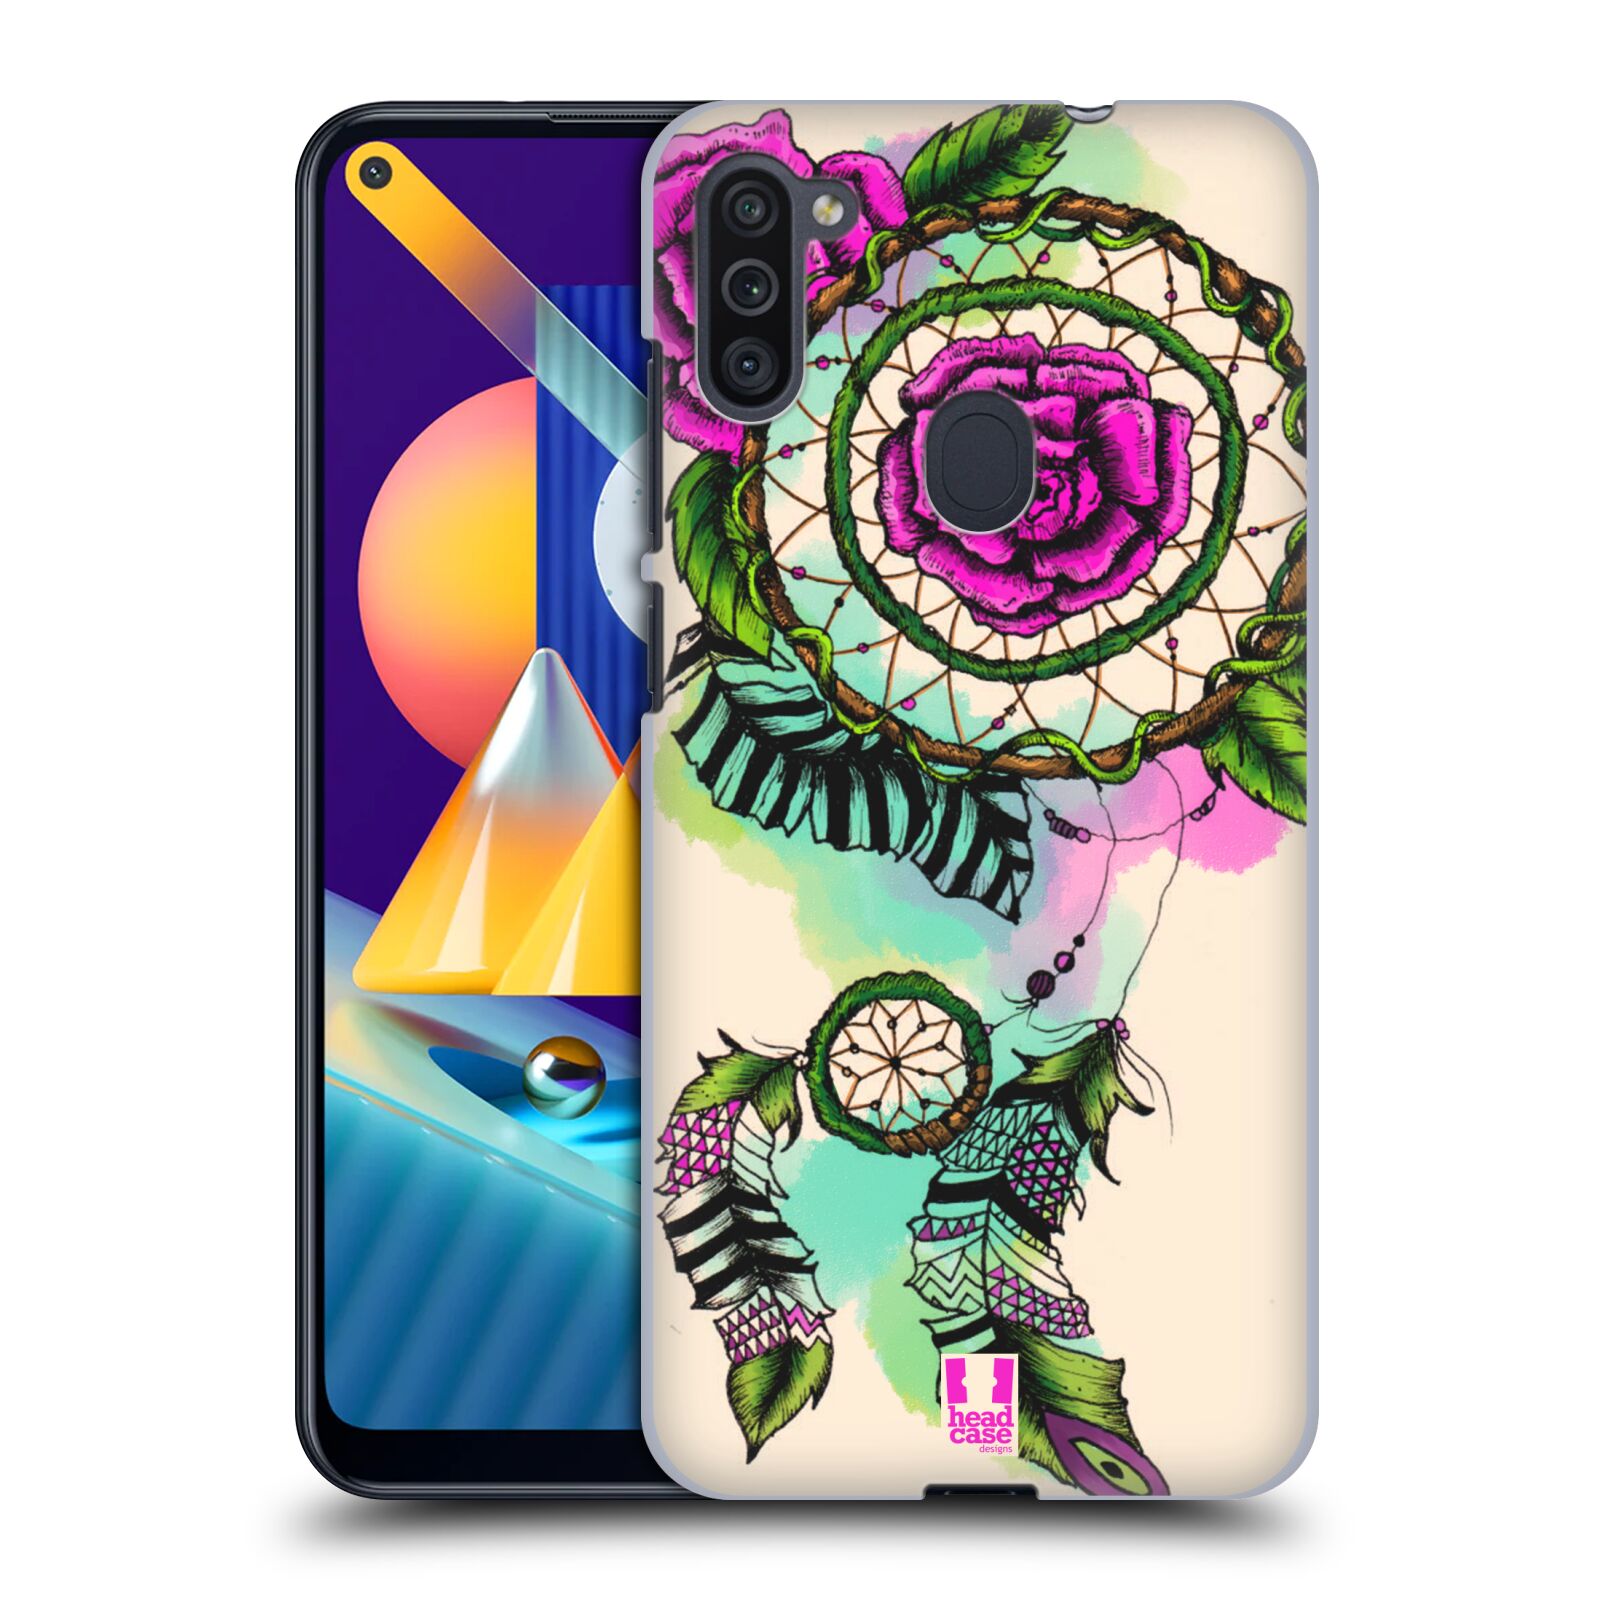 Plastový obal HEAD CASE na mobil Samsung Galaxy M11 vzor Květy lapač snů růže